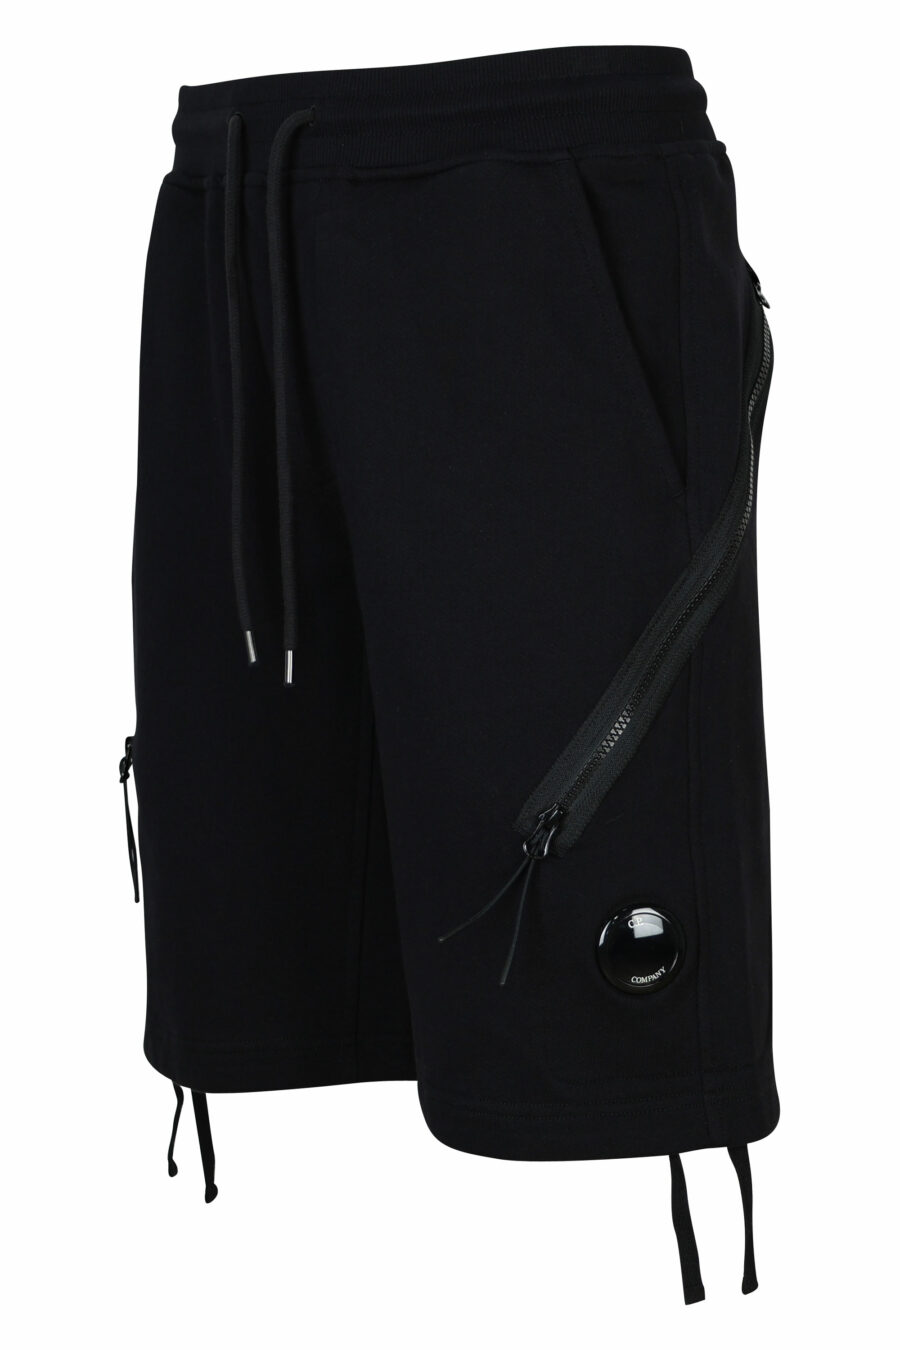 Pantalón de chándal midi negro con minilogo lente - 7620943733013 1